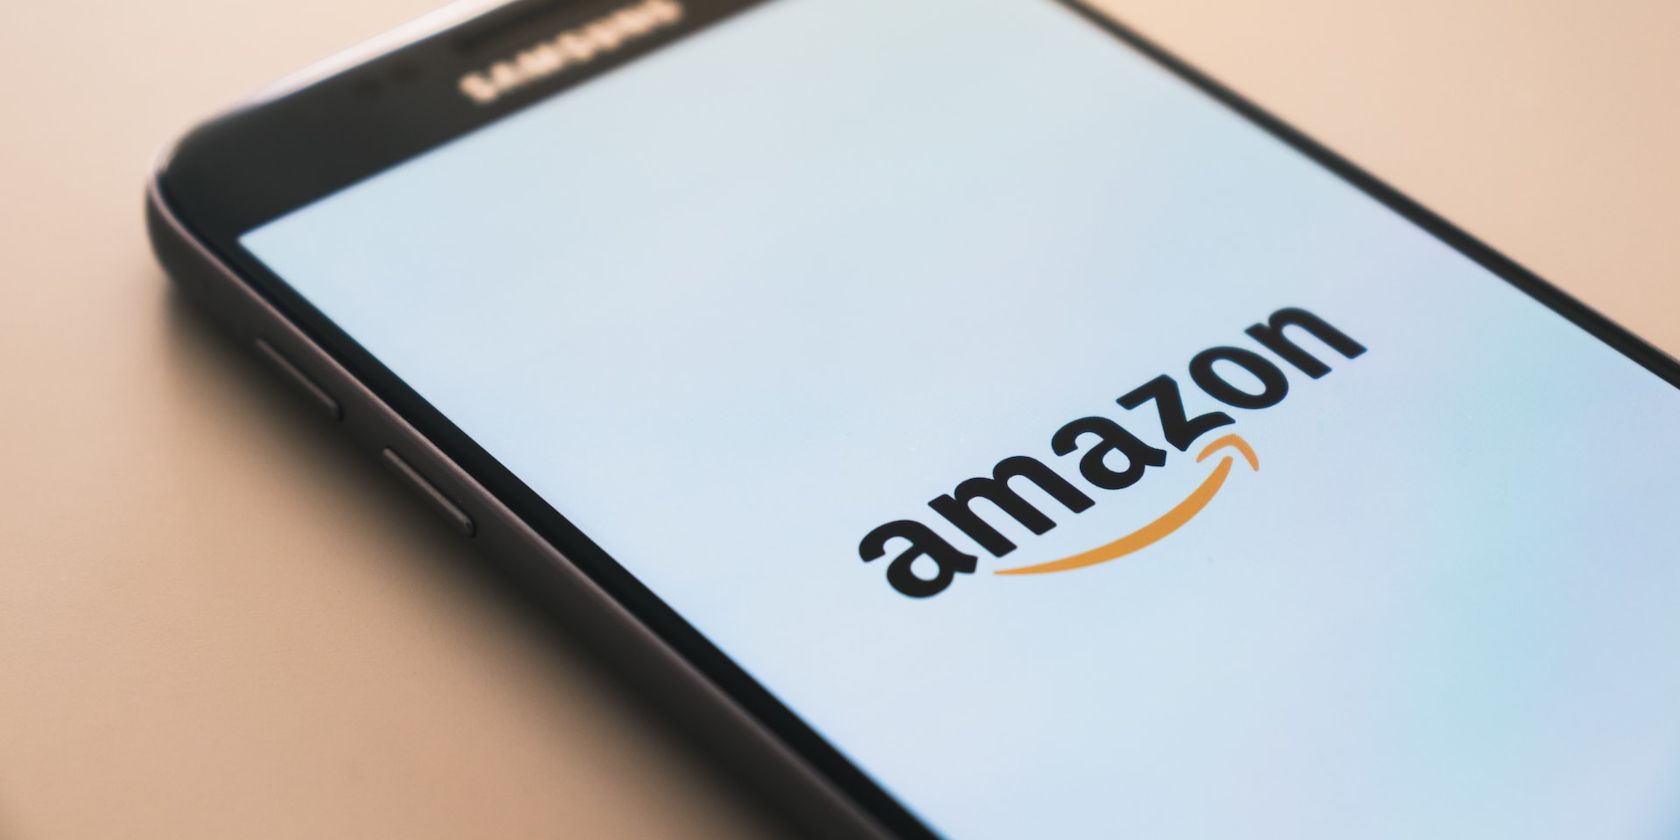 Amazon Logo on Smartphone Screen